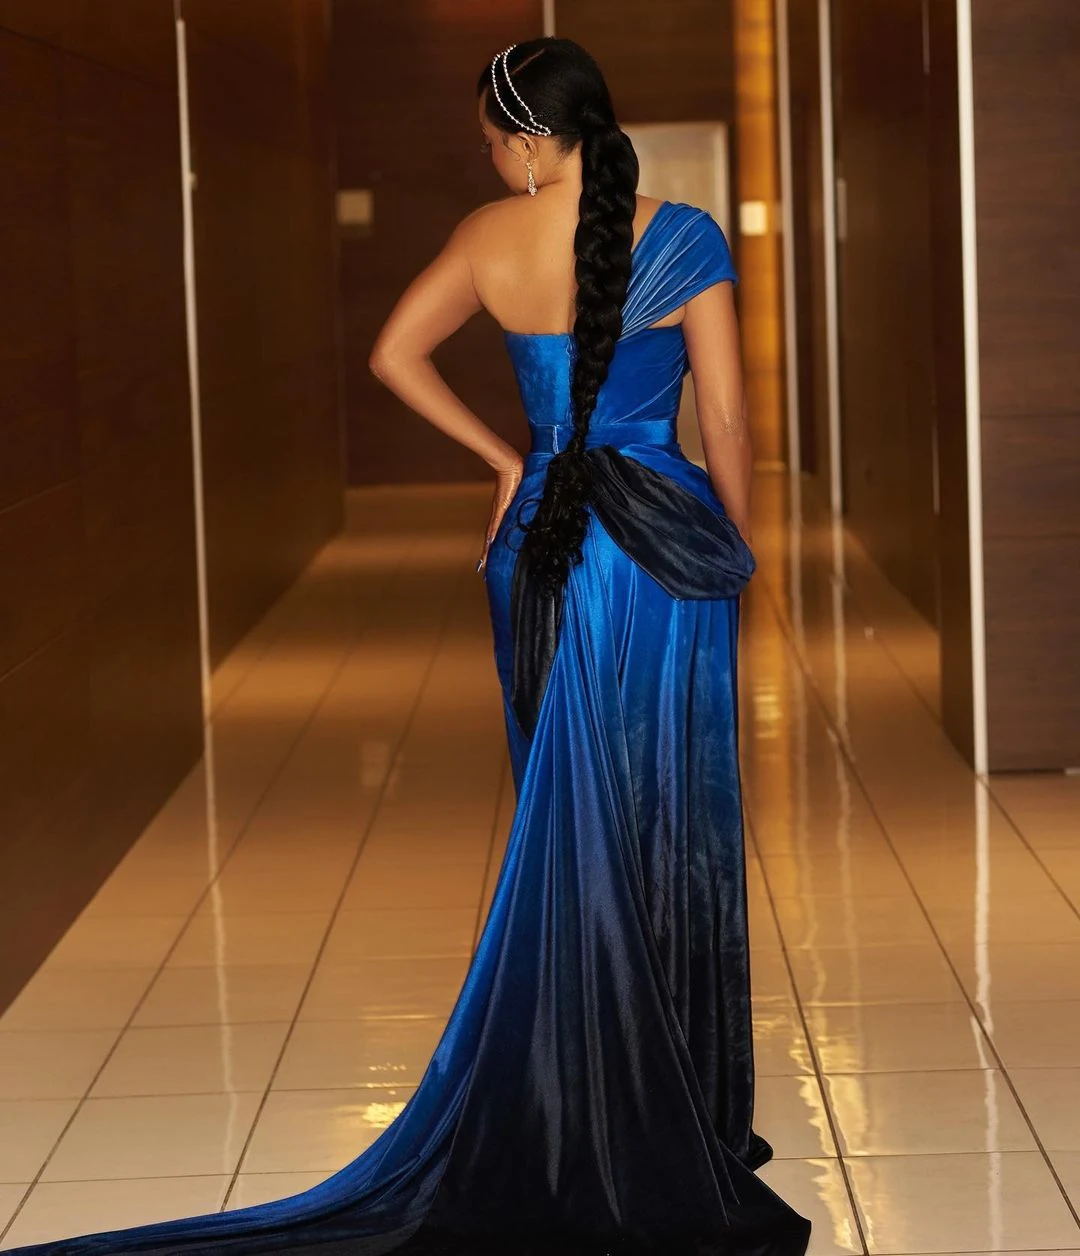 Toke Makinwa in a blue dress